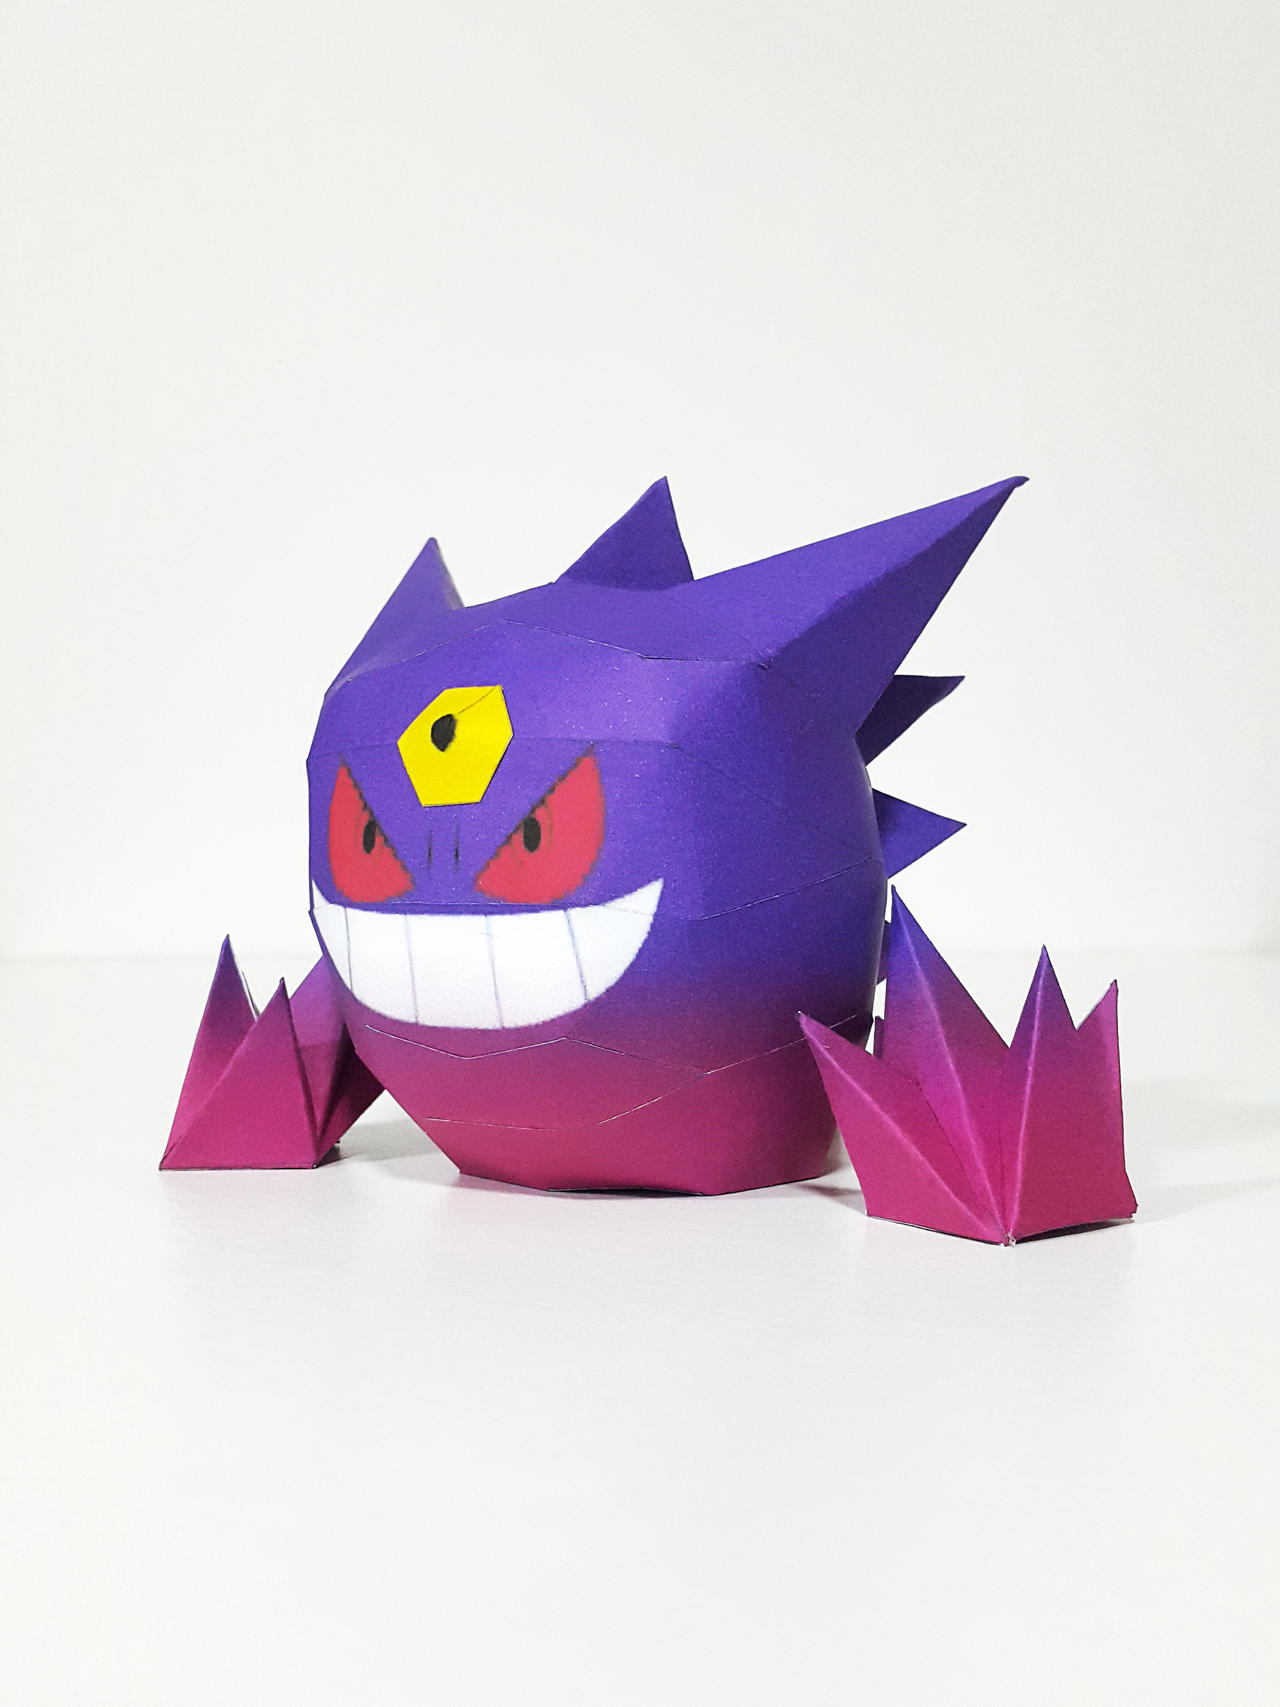 PaperPokés - Pokémon Papercraft: GENESECT